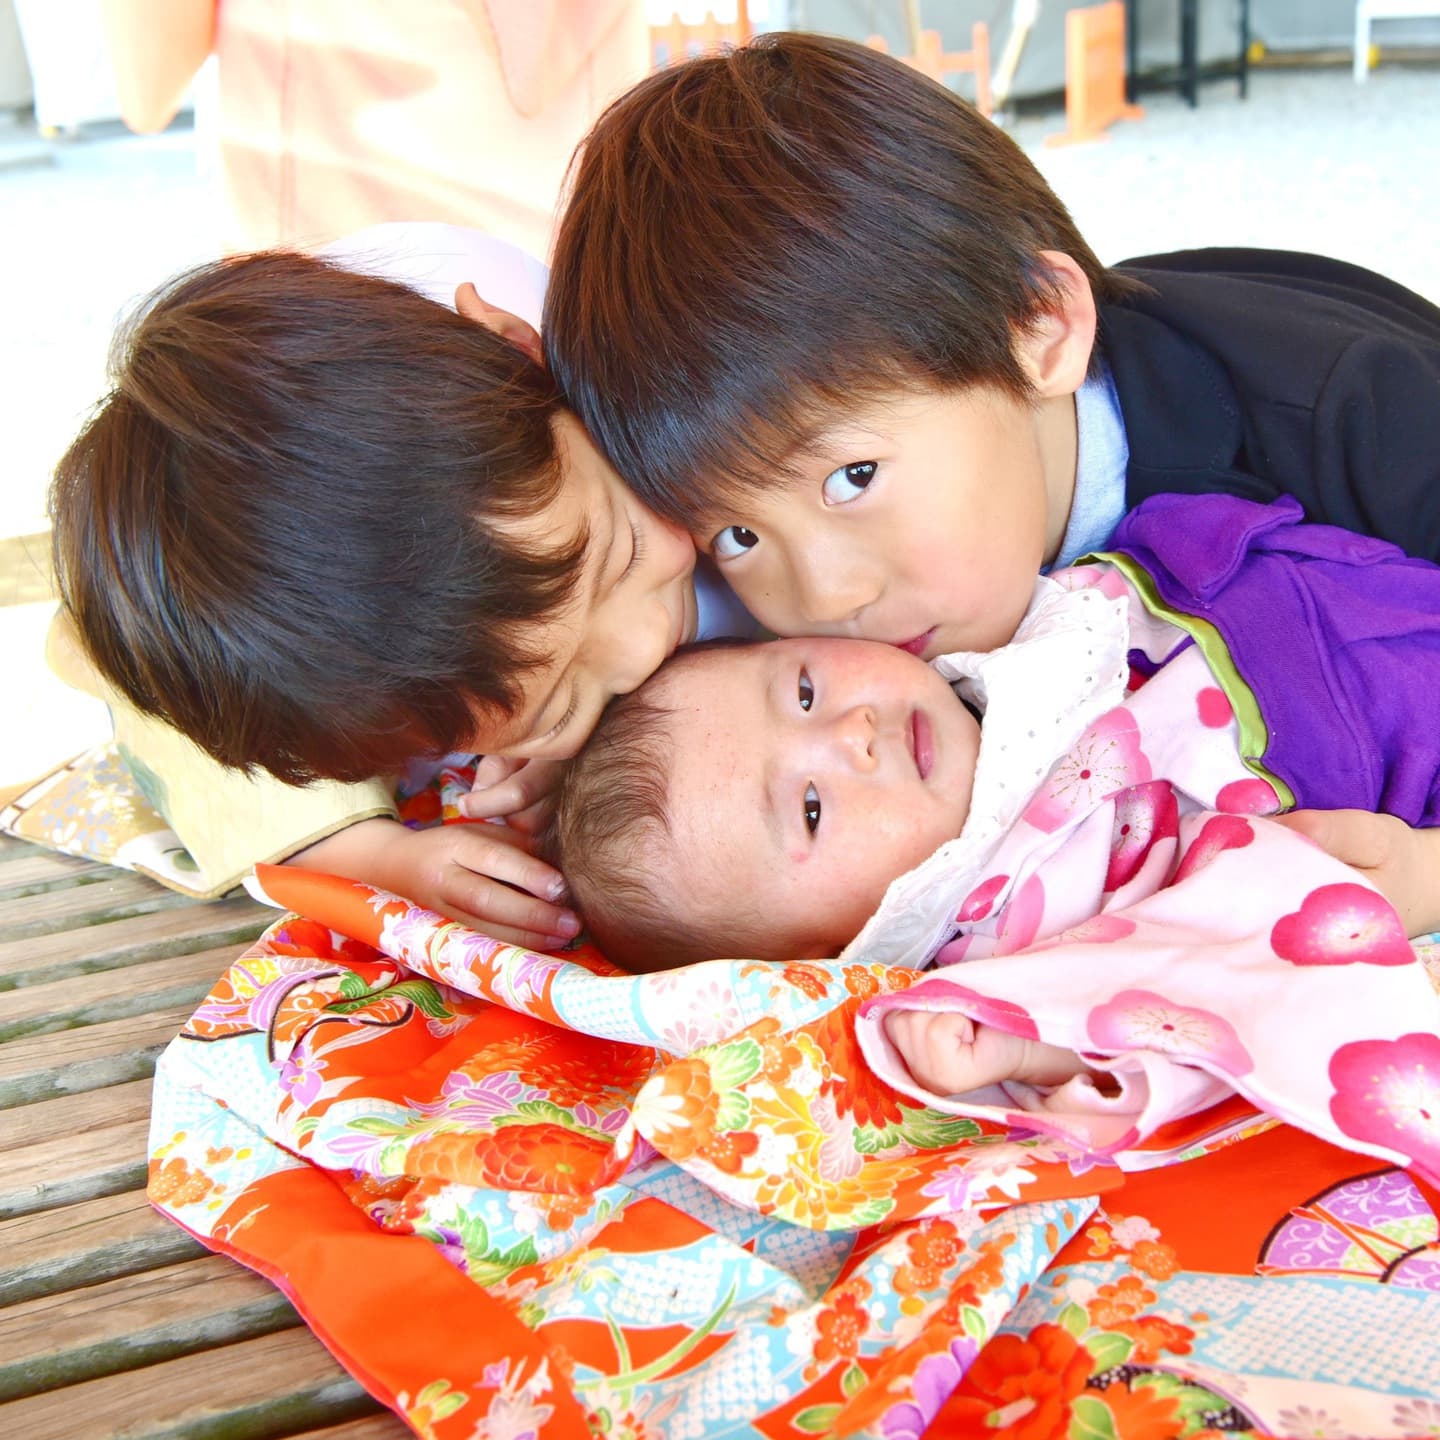 熊野那智大社でお宮参りをした赤ちゃんと家族